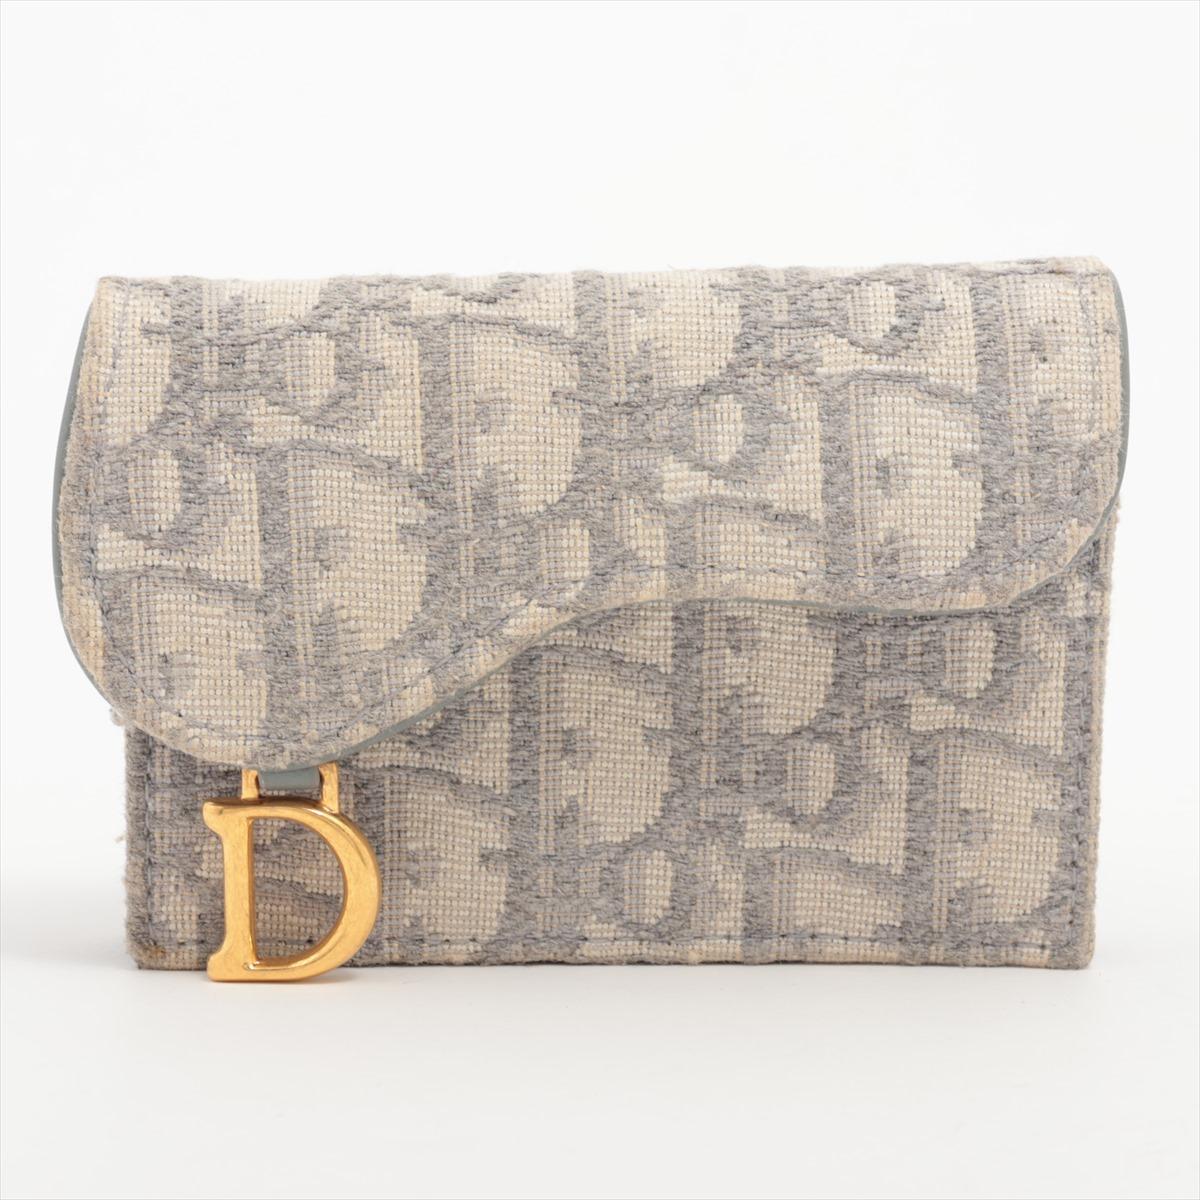 Le porte-cartes Christian Dior Saddle en toile et cuir gris est un accessoire sophistiqué qui allie harmonieusement style et praticité. Réalisé avec une attention méticuleuse aux détails, cet étui à cartes présente une combinaison de toile durable